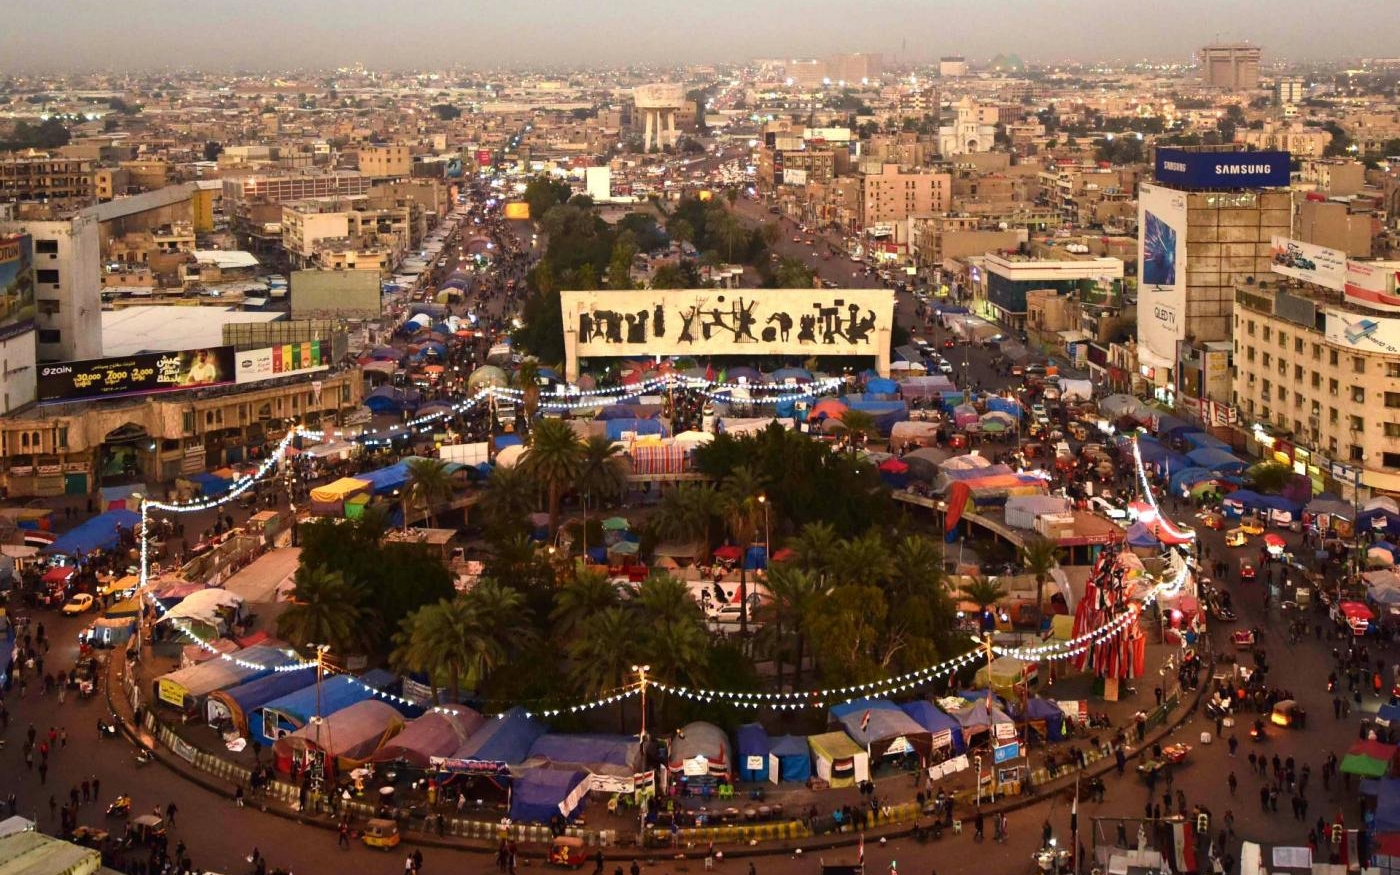 La place Tahrir, photographiée en février 2020, était l’épicentre du mouvement de protestation à Bagdad (MEE/Murtaja Jasim)